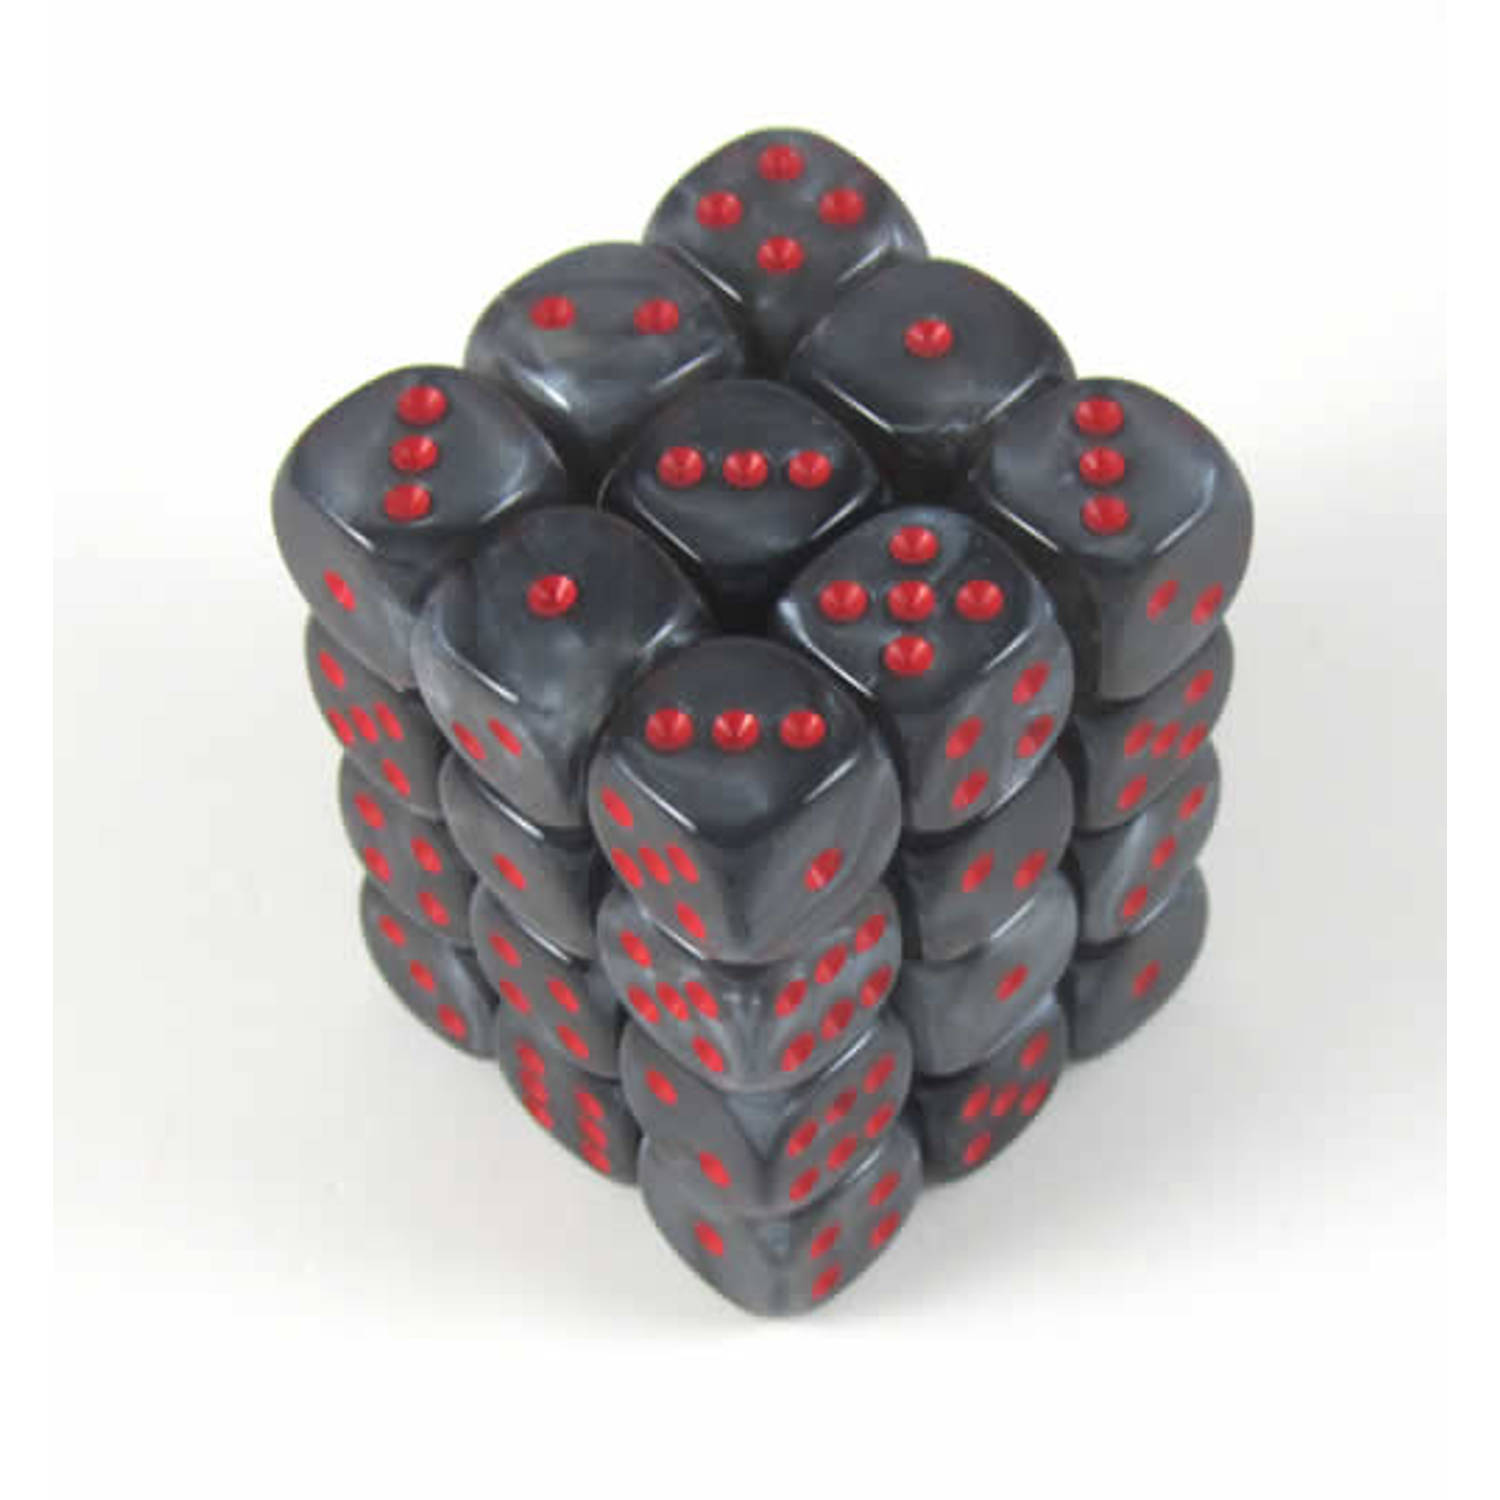 Chessex Velvet Black/red D6 12mm Dobbelsteen Set (36 stuks)